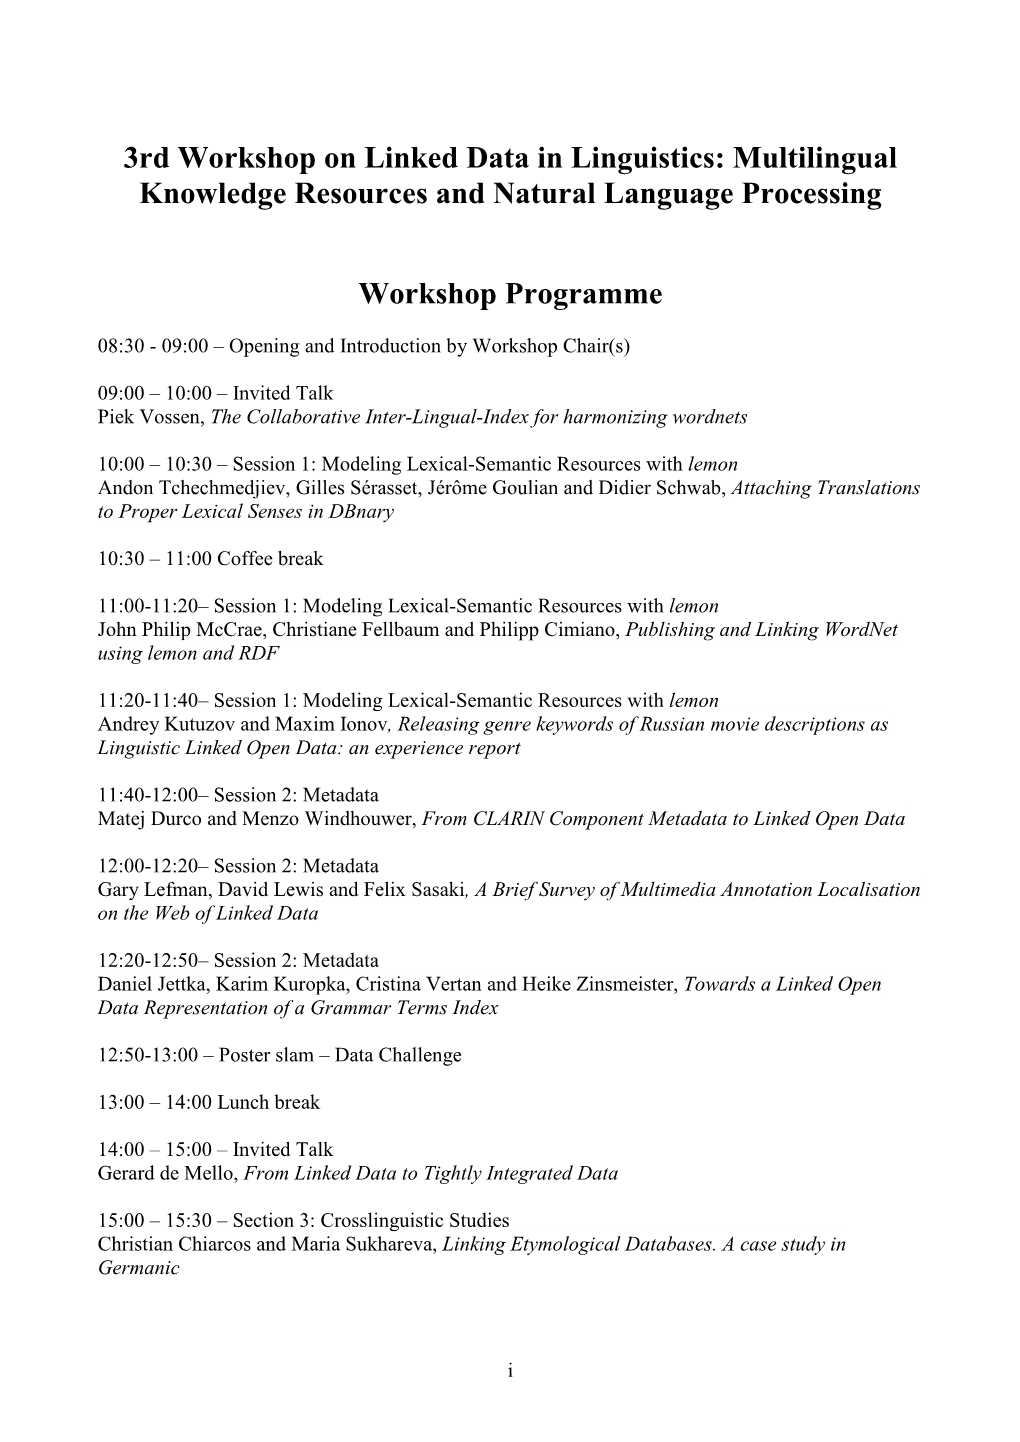 LDL-2014 3Rd Workshop on Linked Data in Linguistics